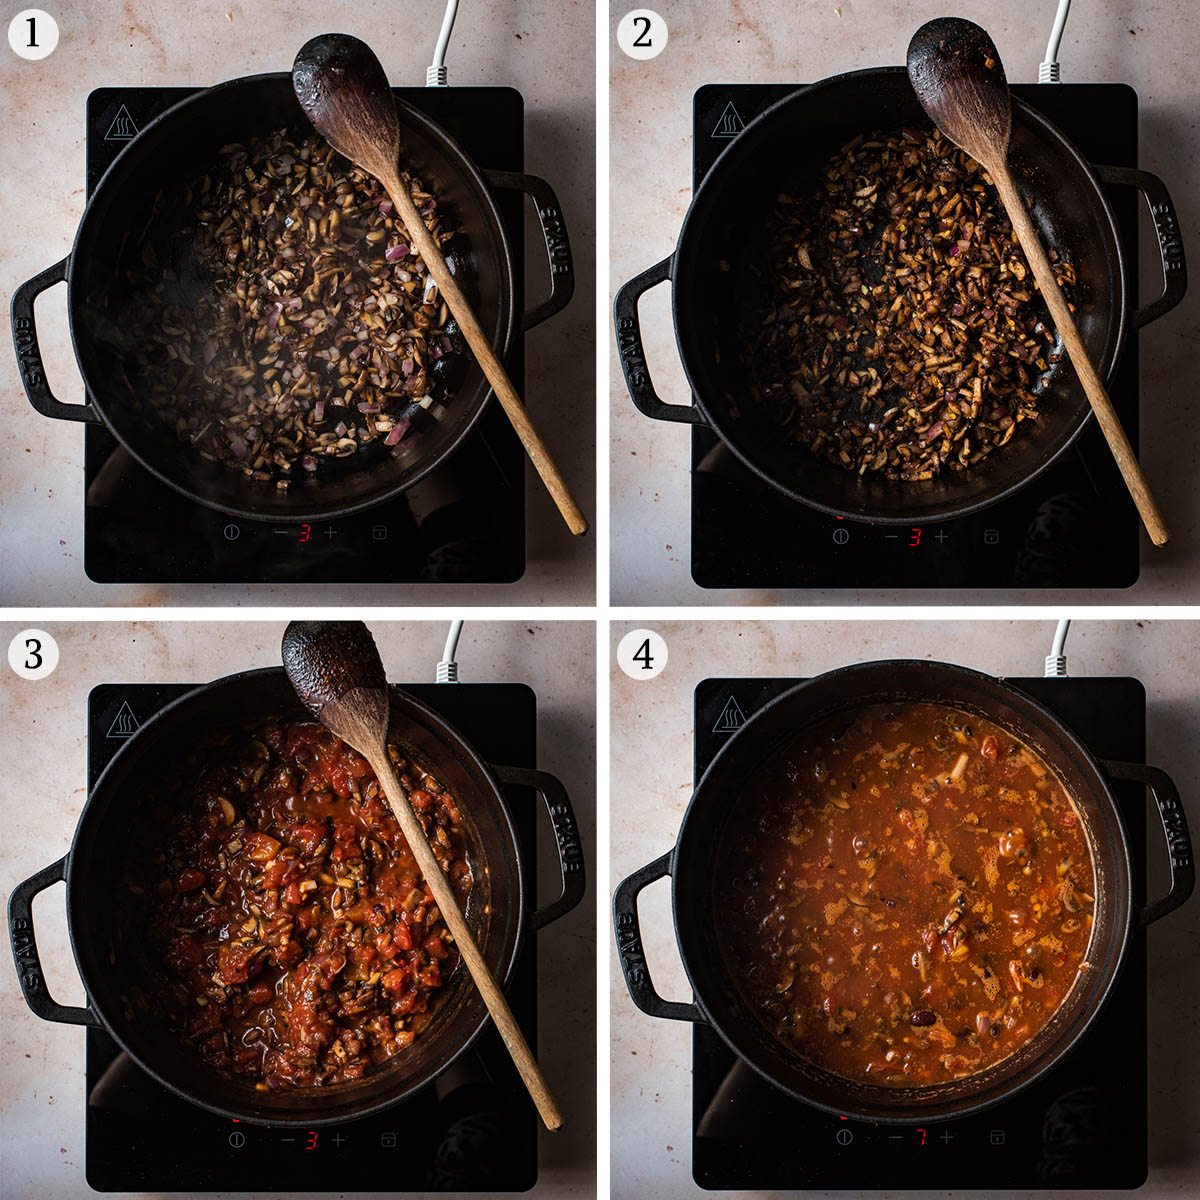 Lentil chili steps 1 to 4.